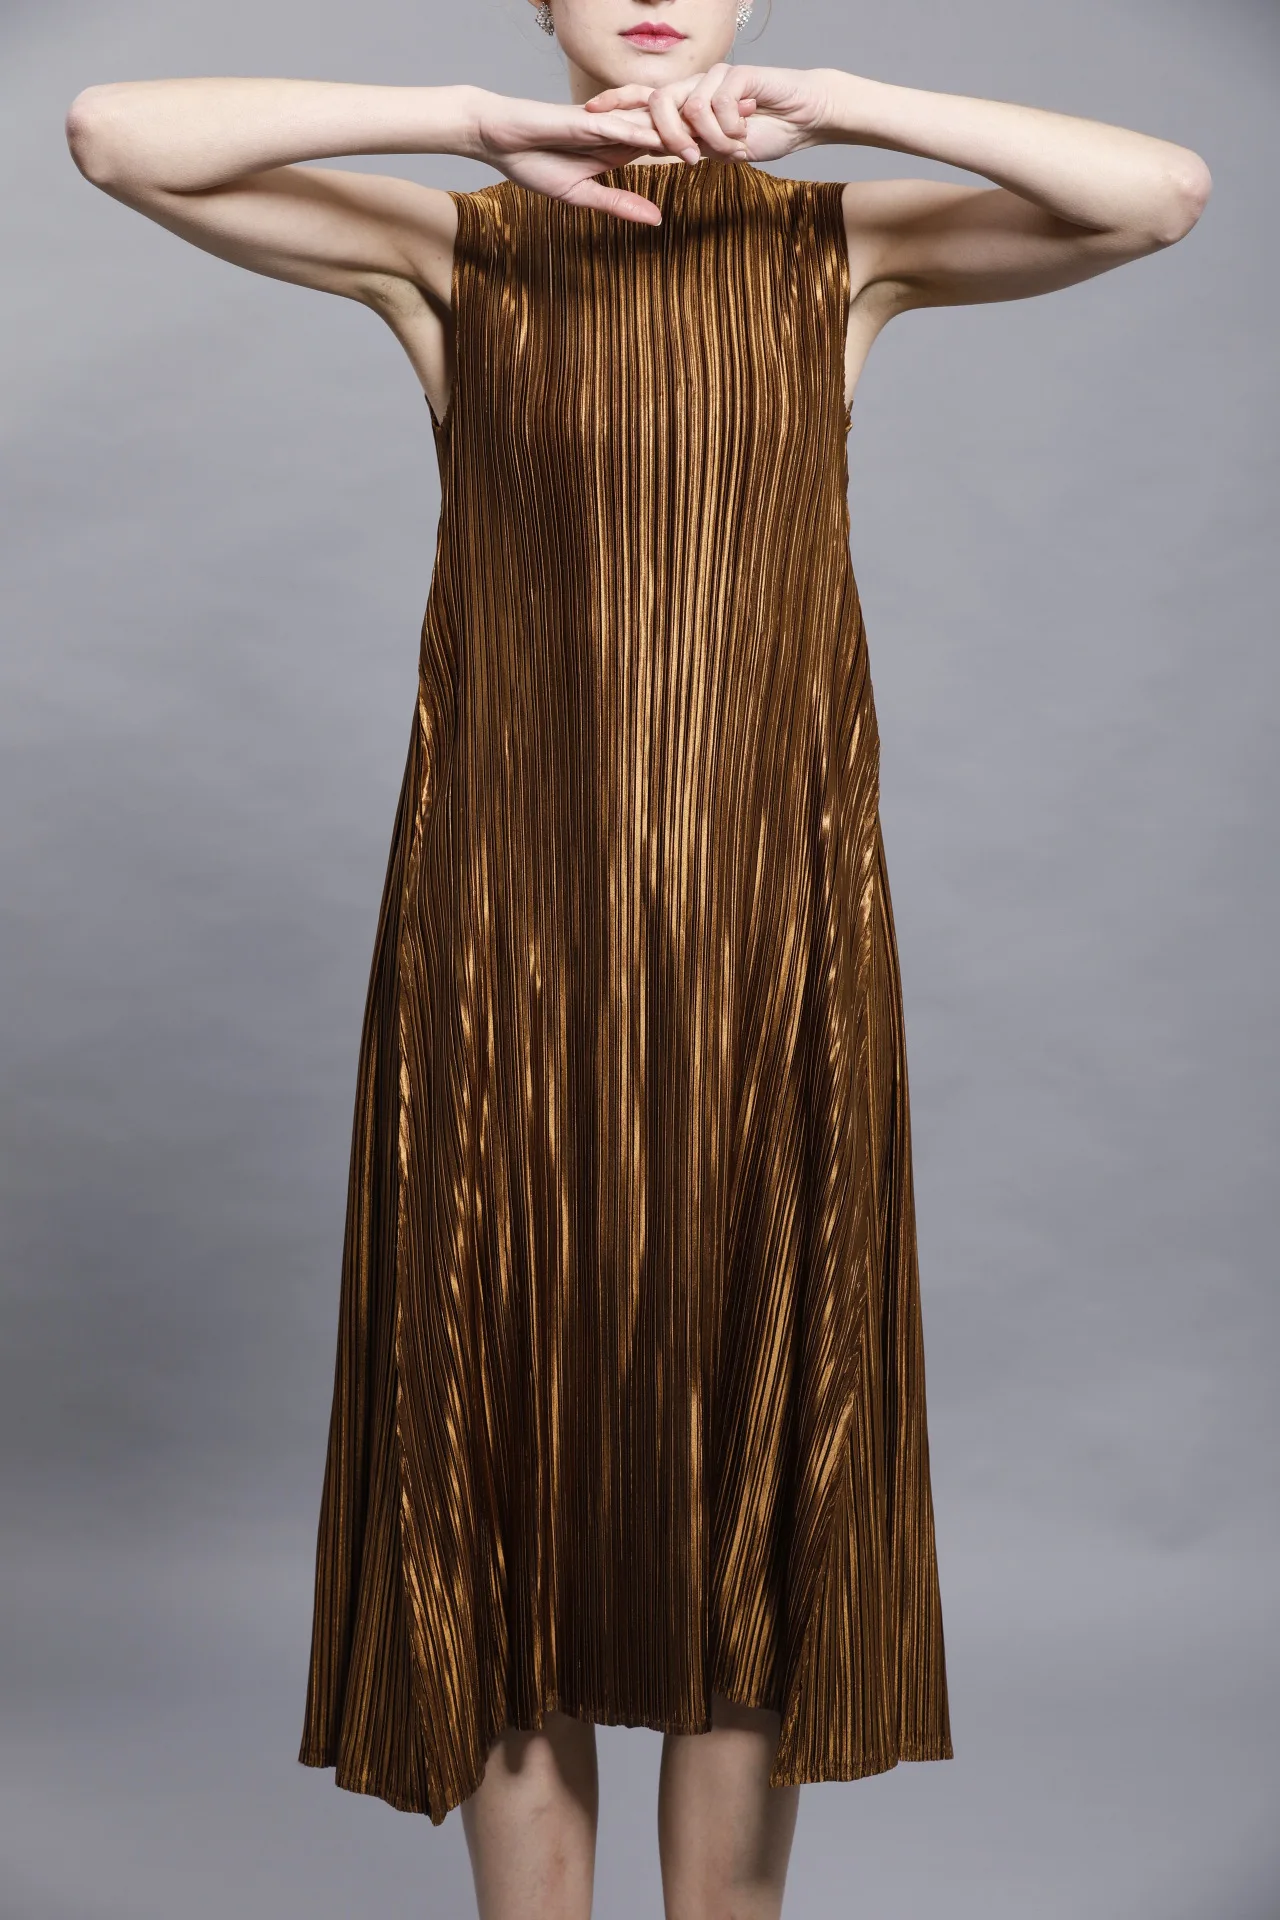 Changpleat, летняя коллекция платьев металлического блеска дизайн Miyake плиссированные стоячий воротник без рукавов платья для женщин черное платье с широкой юбкой